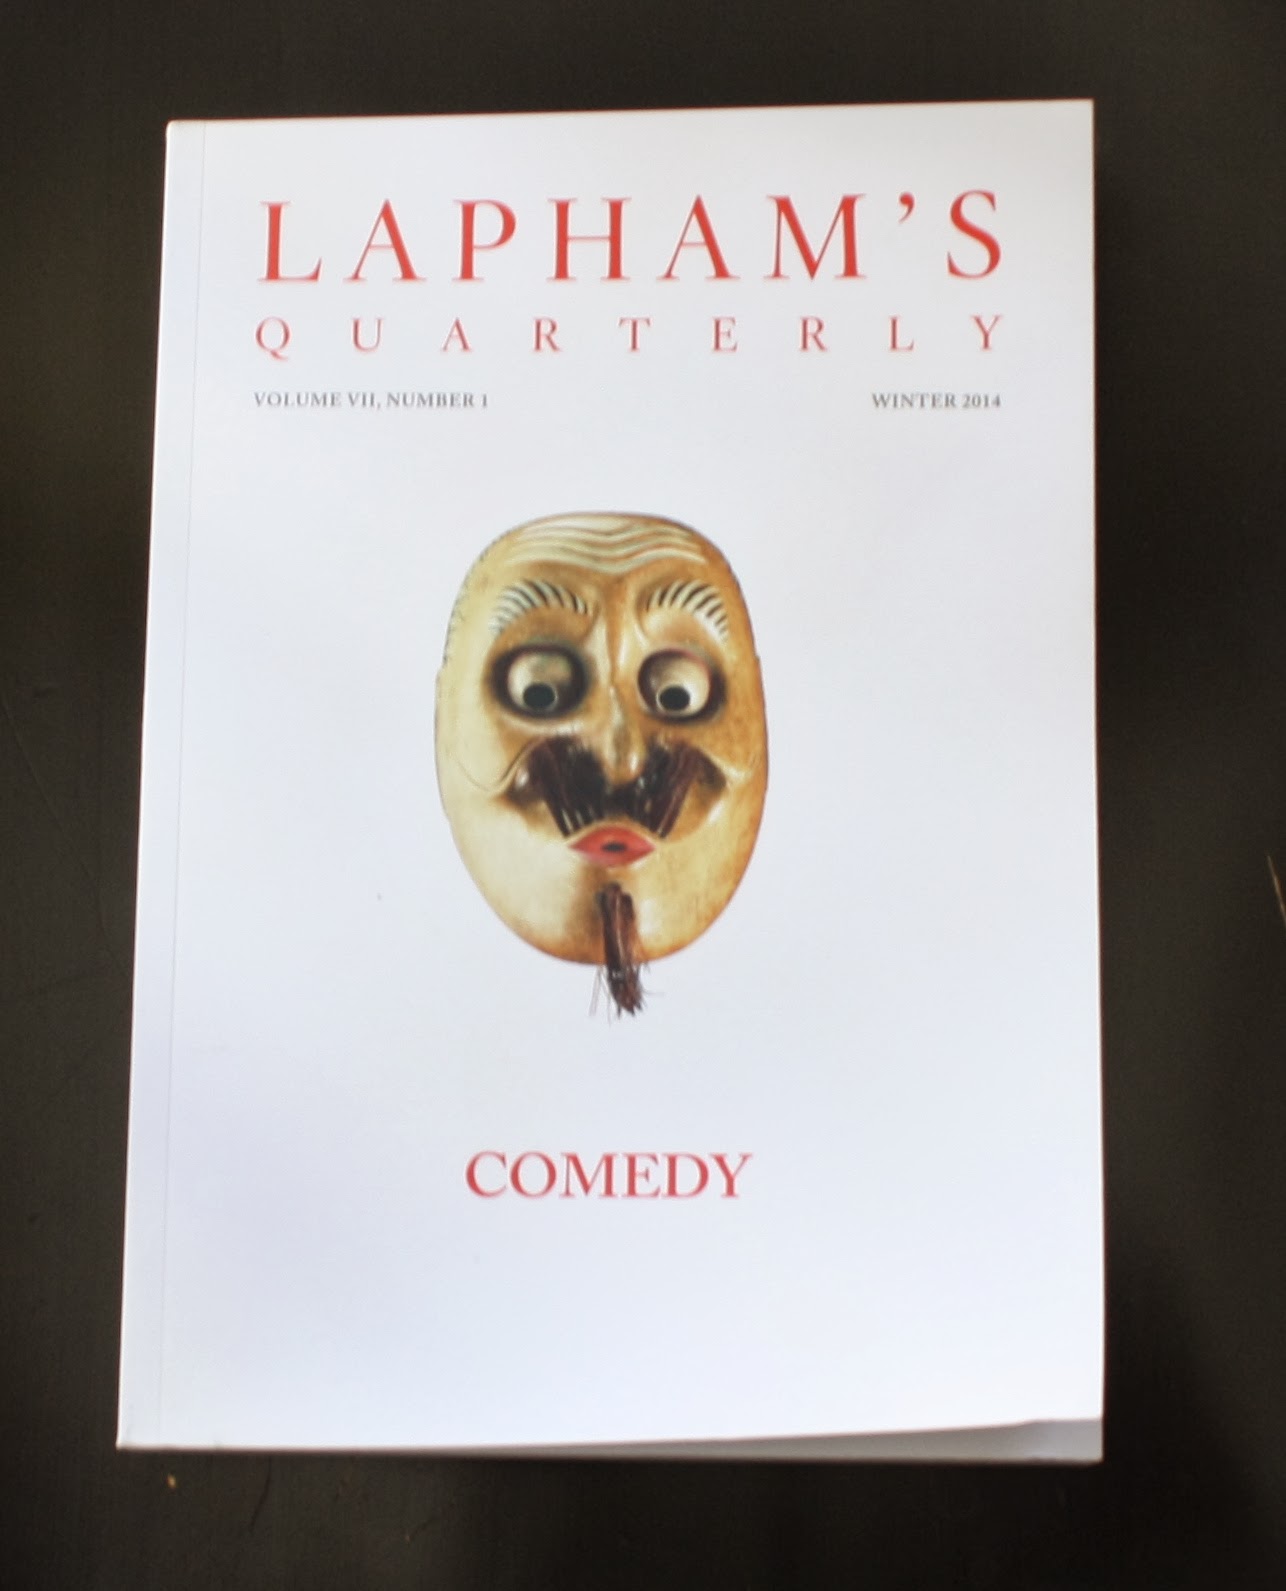 Laphams Quarterly - Comedy